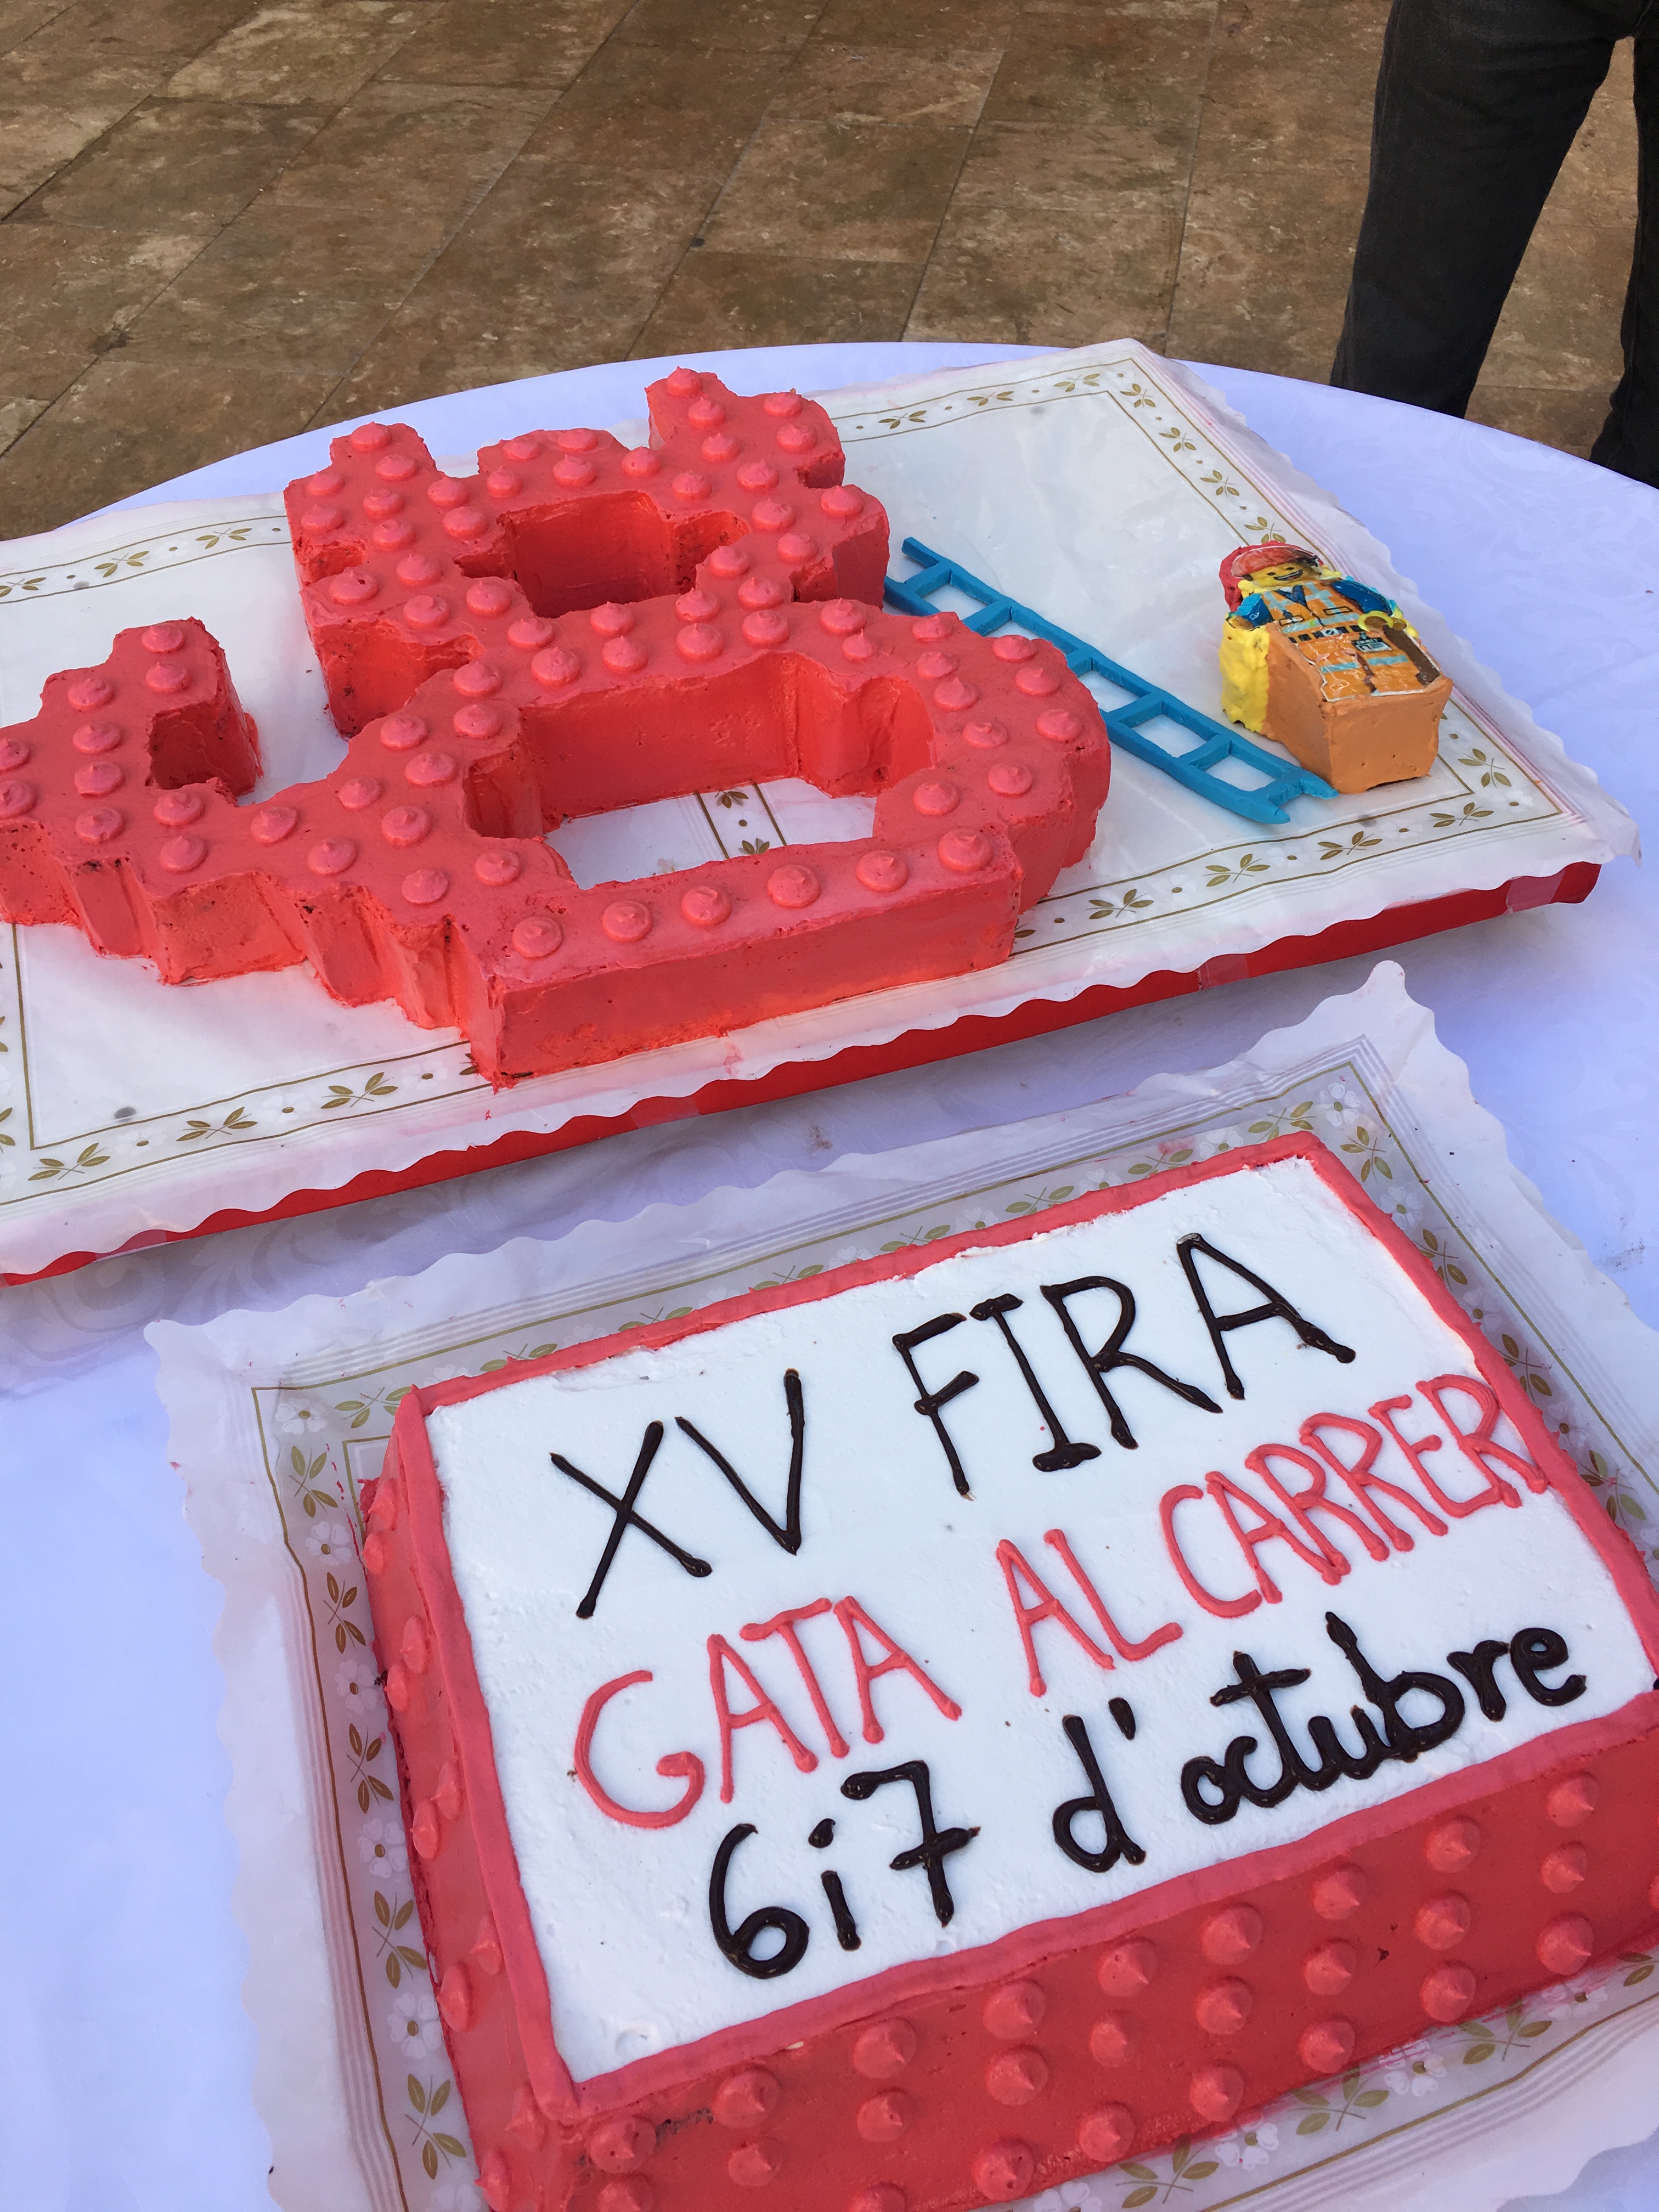 Gata celebra 15 anys de Fira al Carrer el 6 i 7 d’octubre